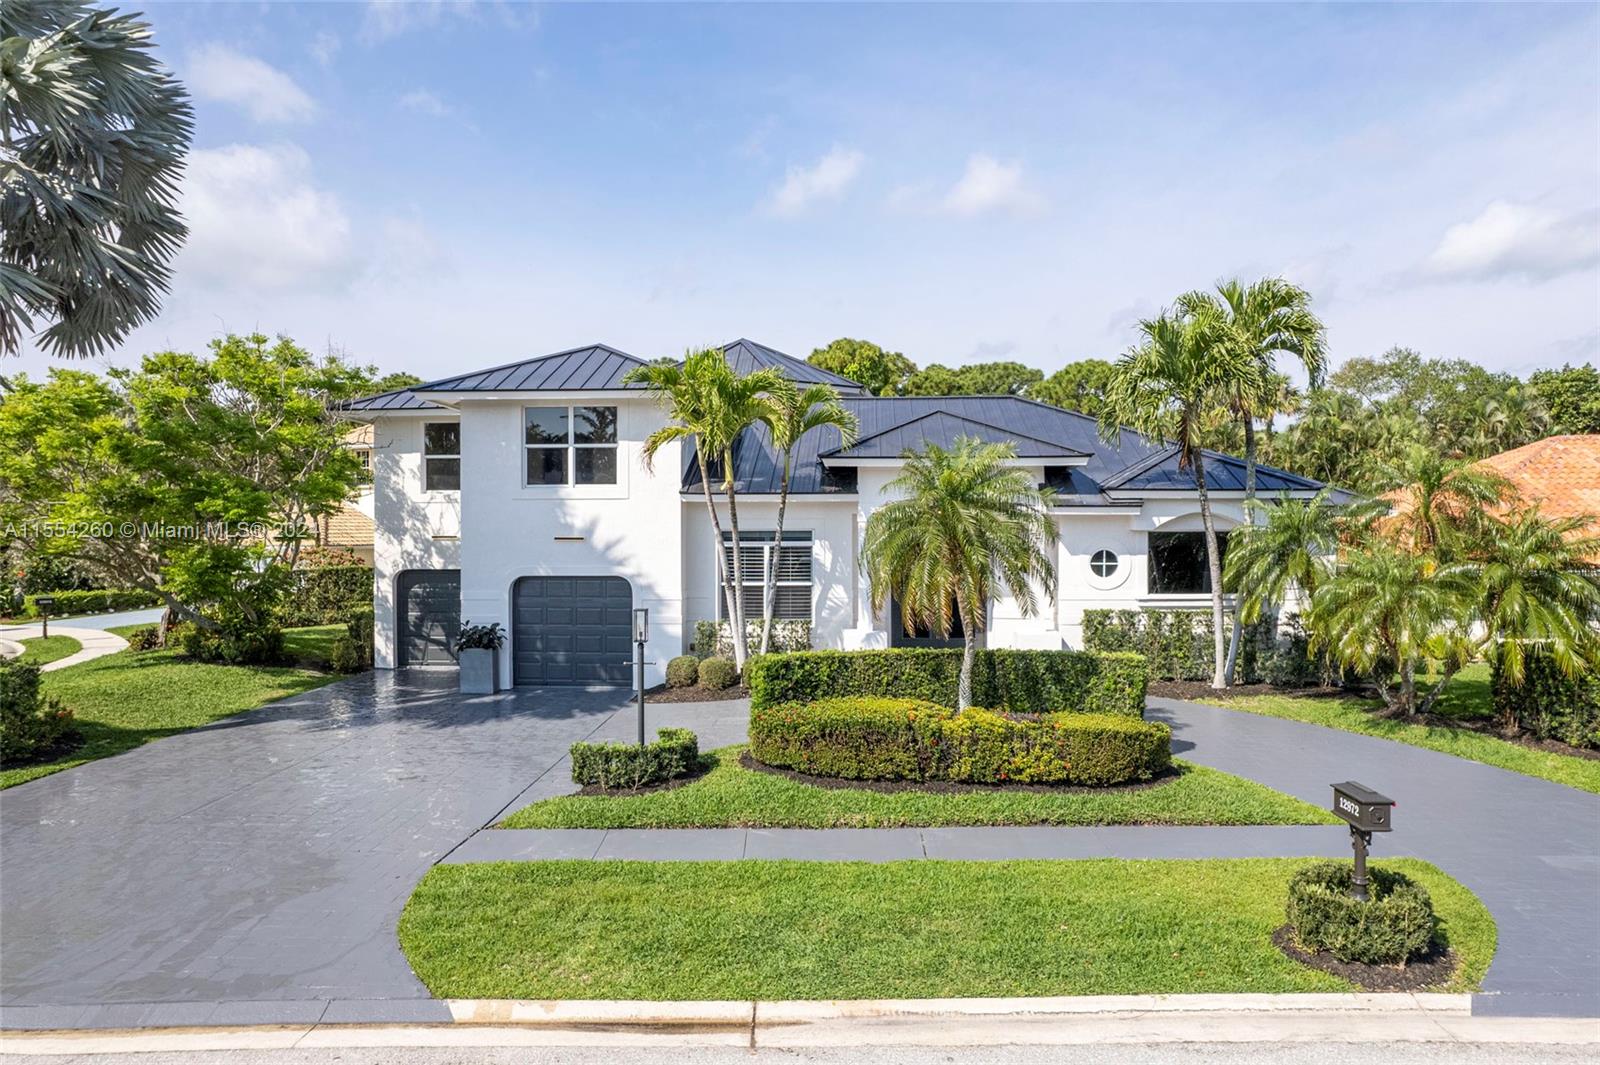 Property for Sale at 12972 Calais Cir Cir, Palm Beach Gardens, Palm Beach County, Florida - Bedrooms: 4 
Bathrooms: 4  - $1,595,200